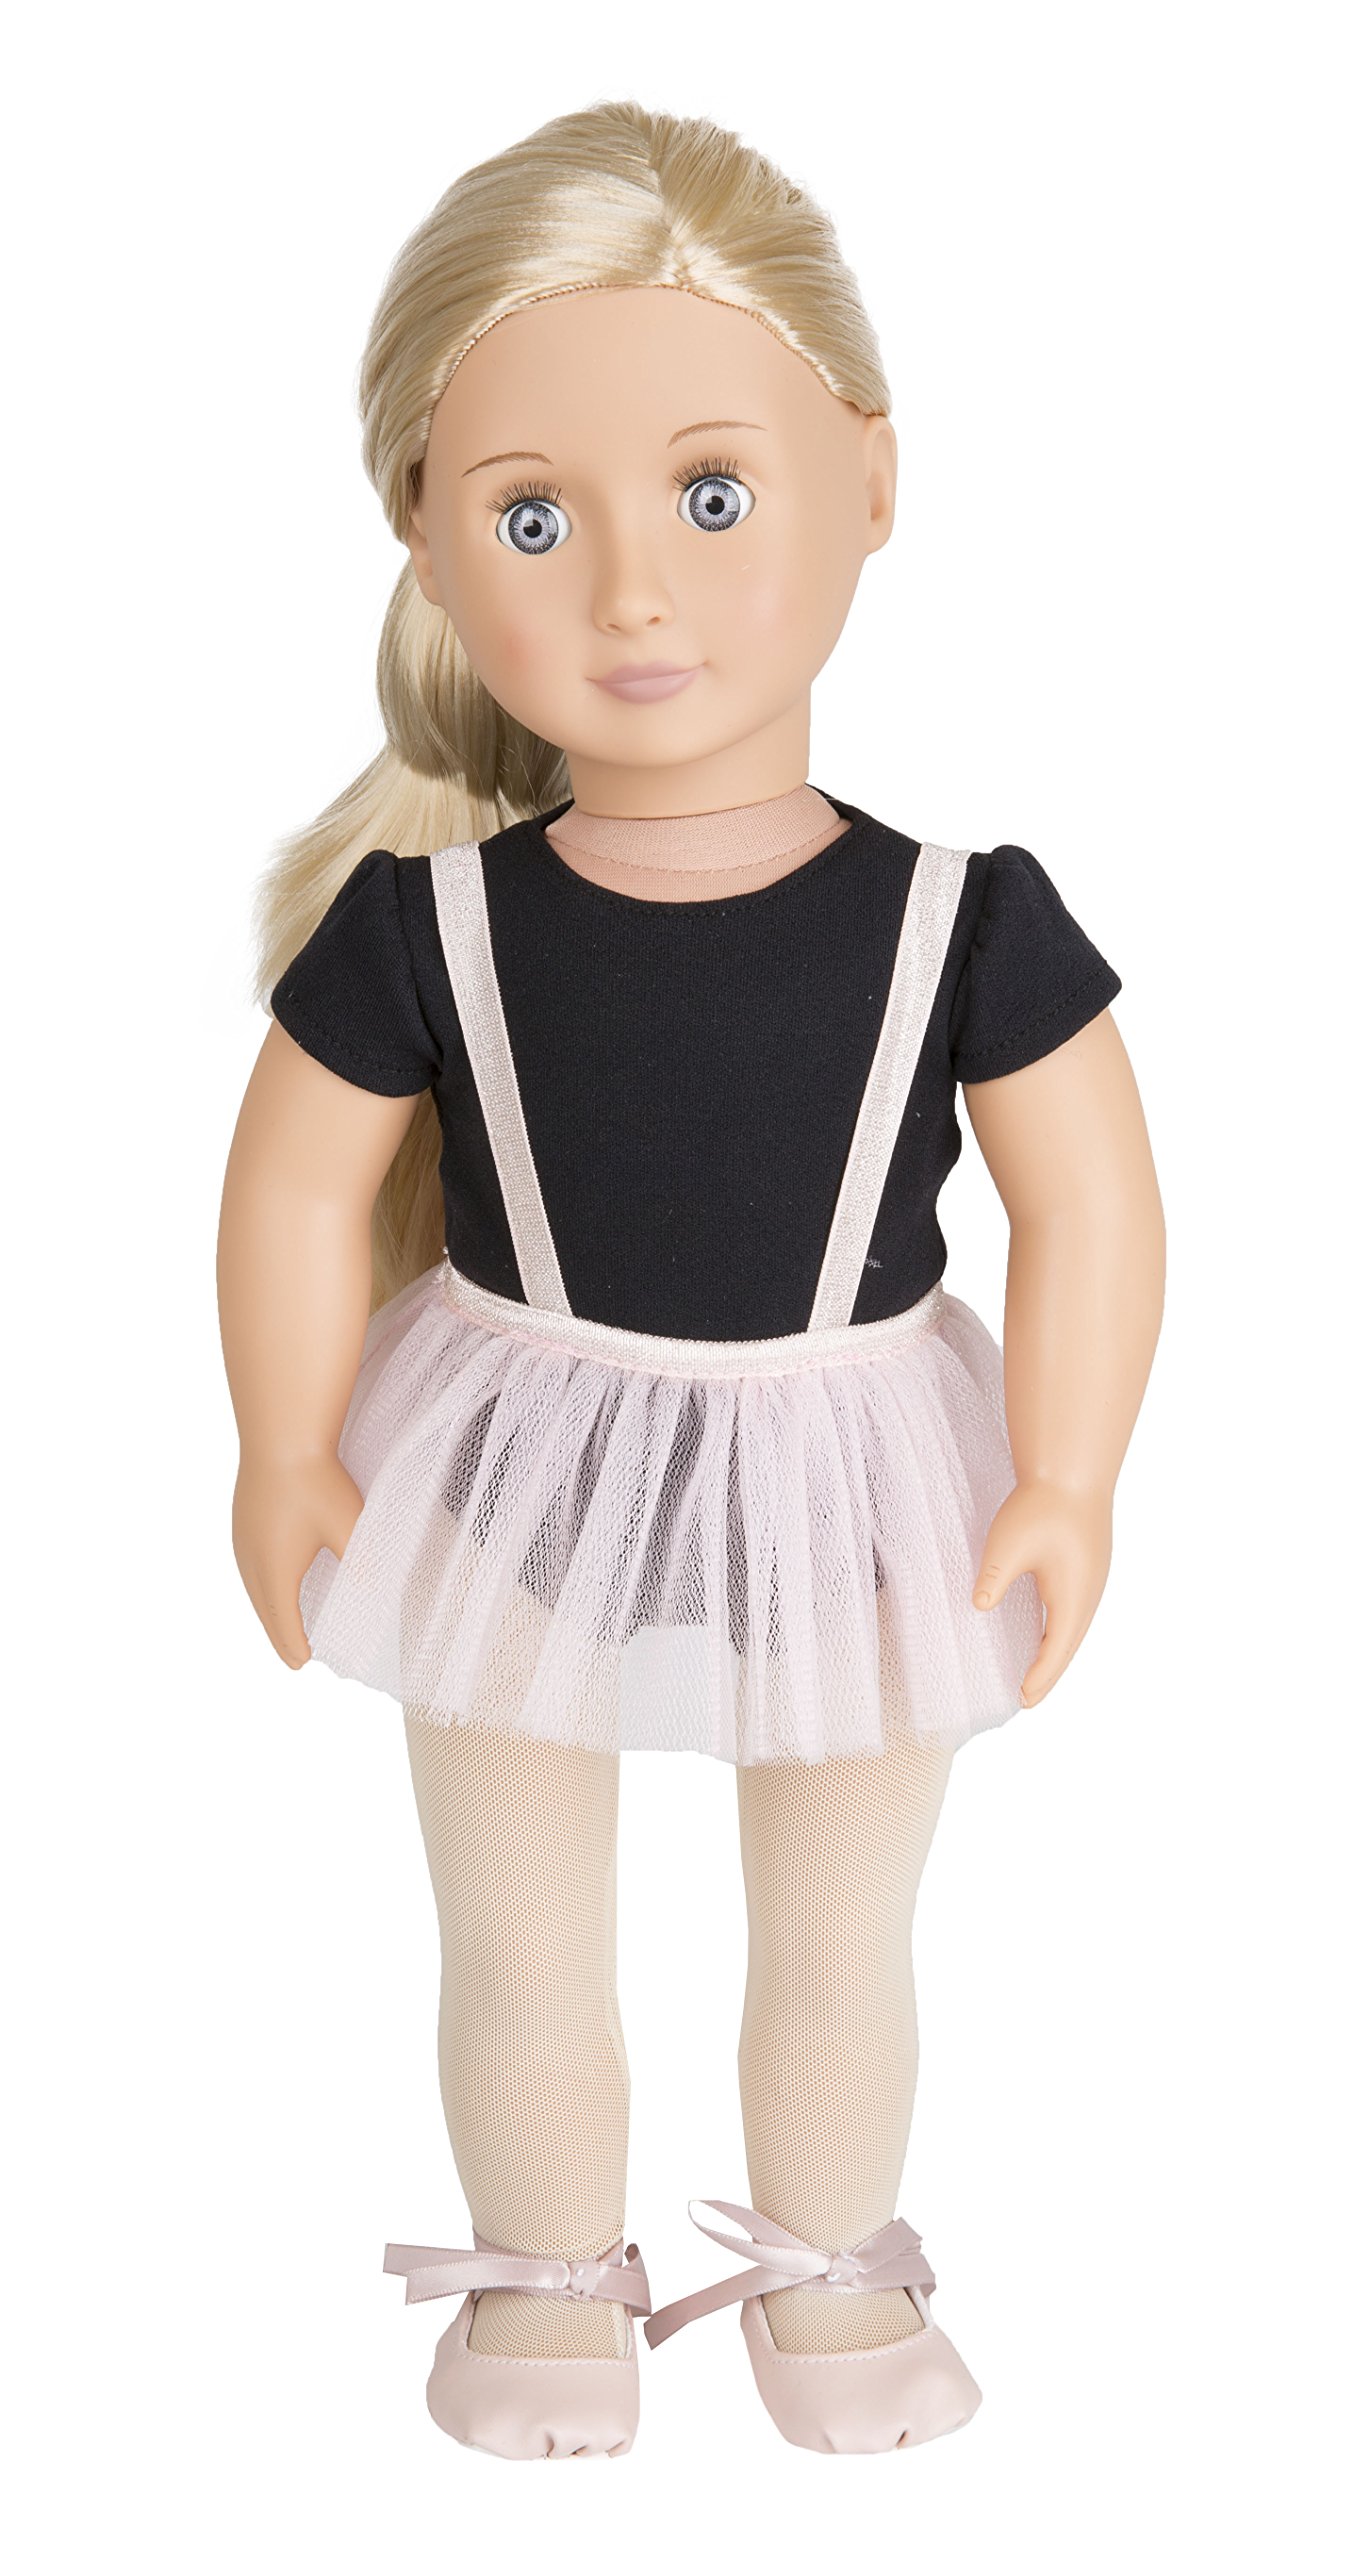 Our Generation – 46 cm Ballerina-Puppe – Blondes Haar & Lila Augen – Ballett Outfit – Rollenspiel – Spielzeug für Kinder ab 3 Jahren – Violet Anna